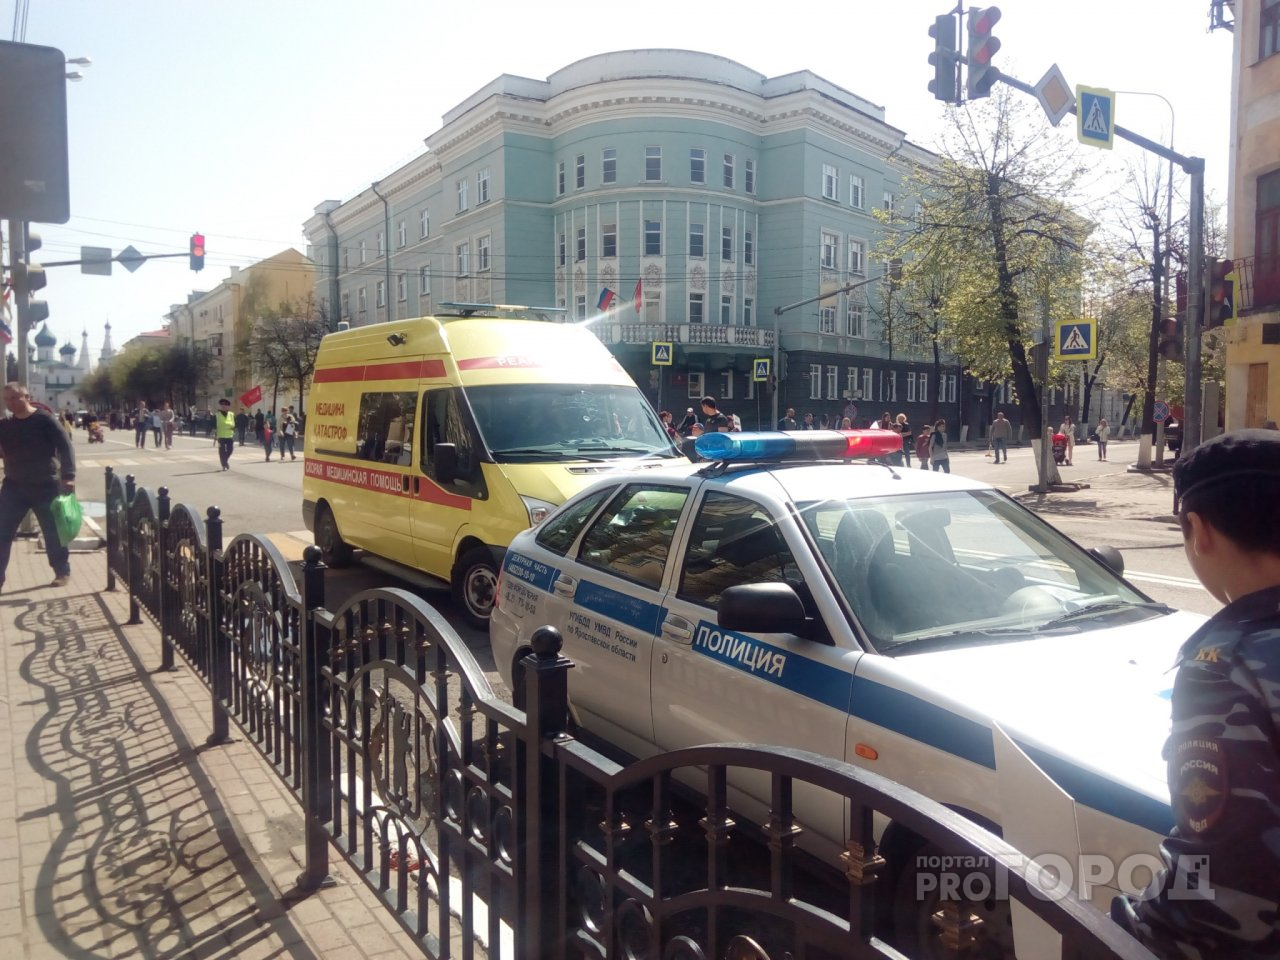 "Слетели ботинки": грузовик раздавил мужчину на трассе под Ярославлем